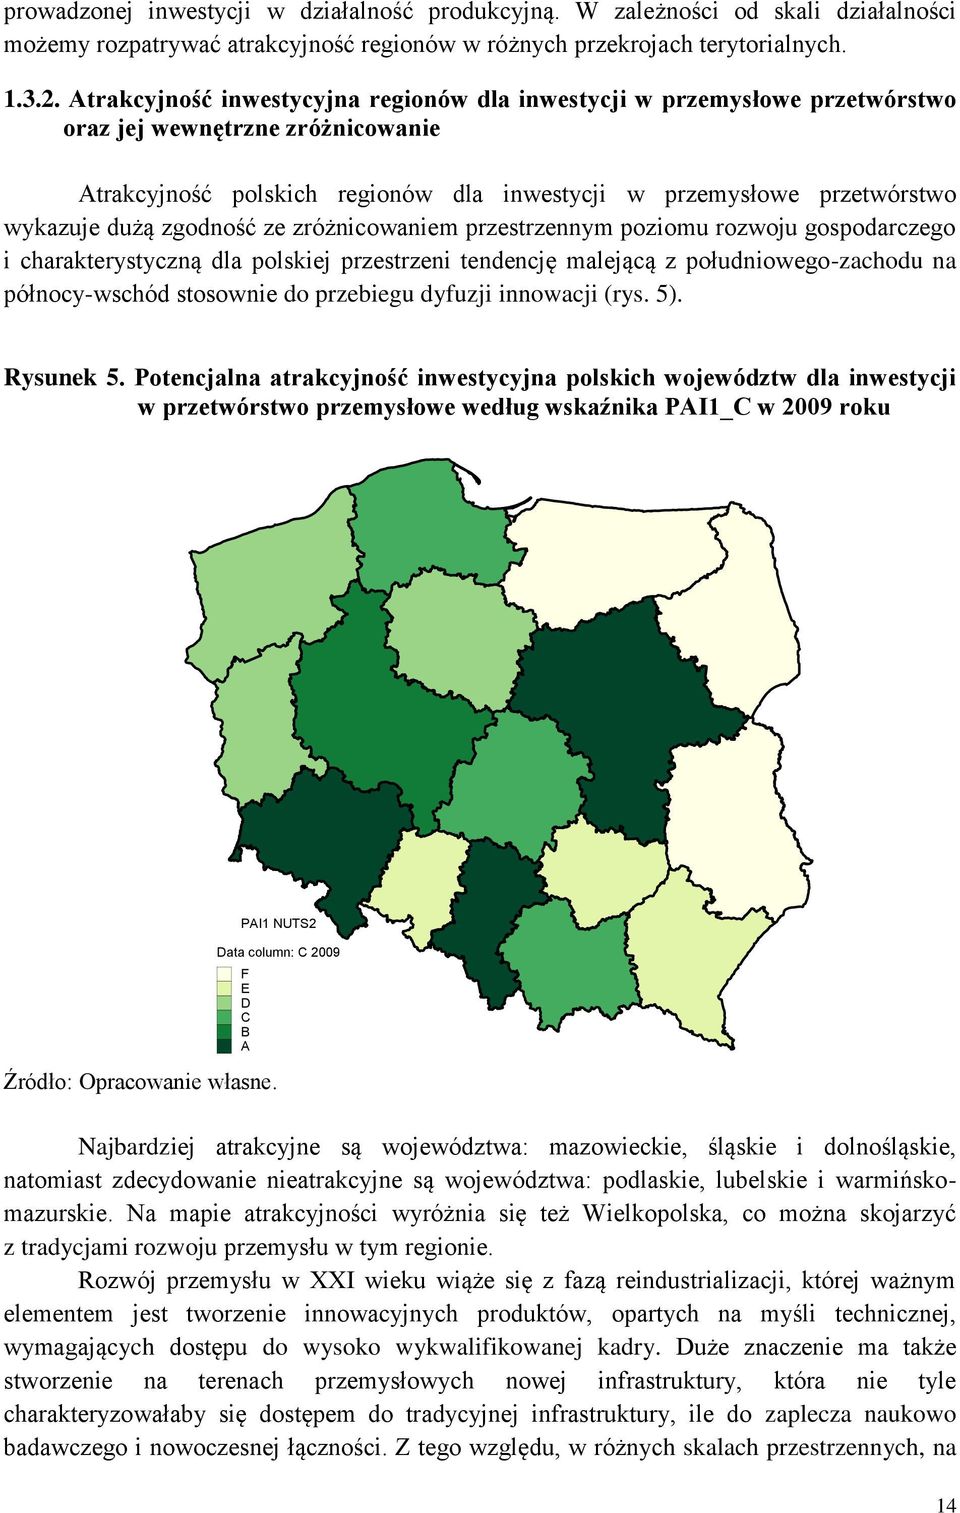 zgodność ze zróżnicowaniem przestrzennym poziomu rozwoju gospodarczego i charakterystyczną dla polskiej przestrzeni tendencję malejącą z południowego-zachodu na północy-wschód stosownie do przebiegu